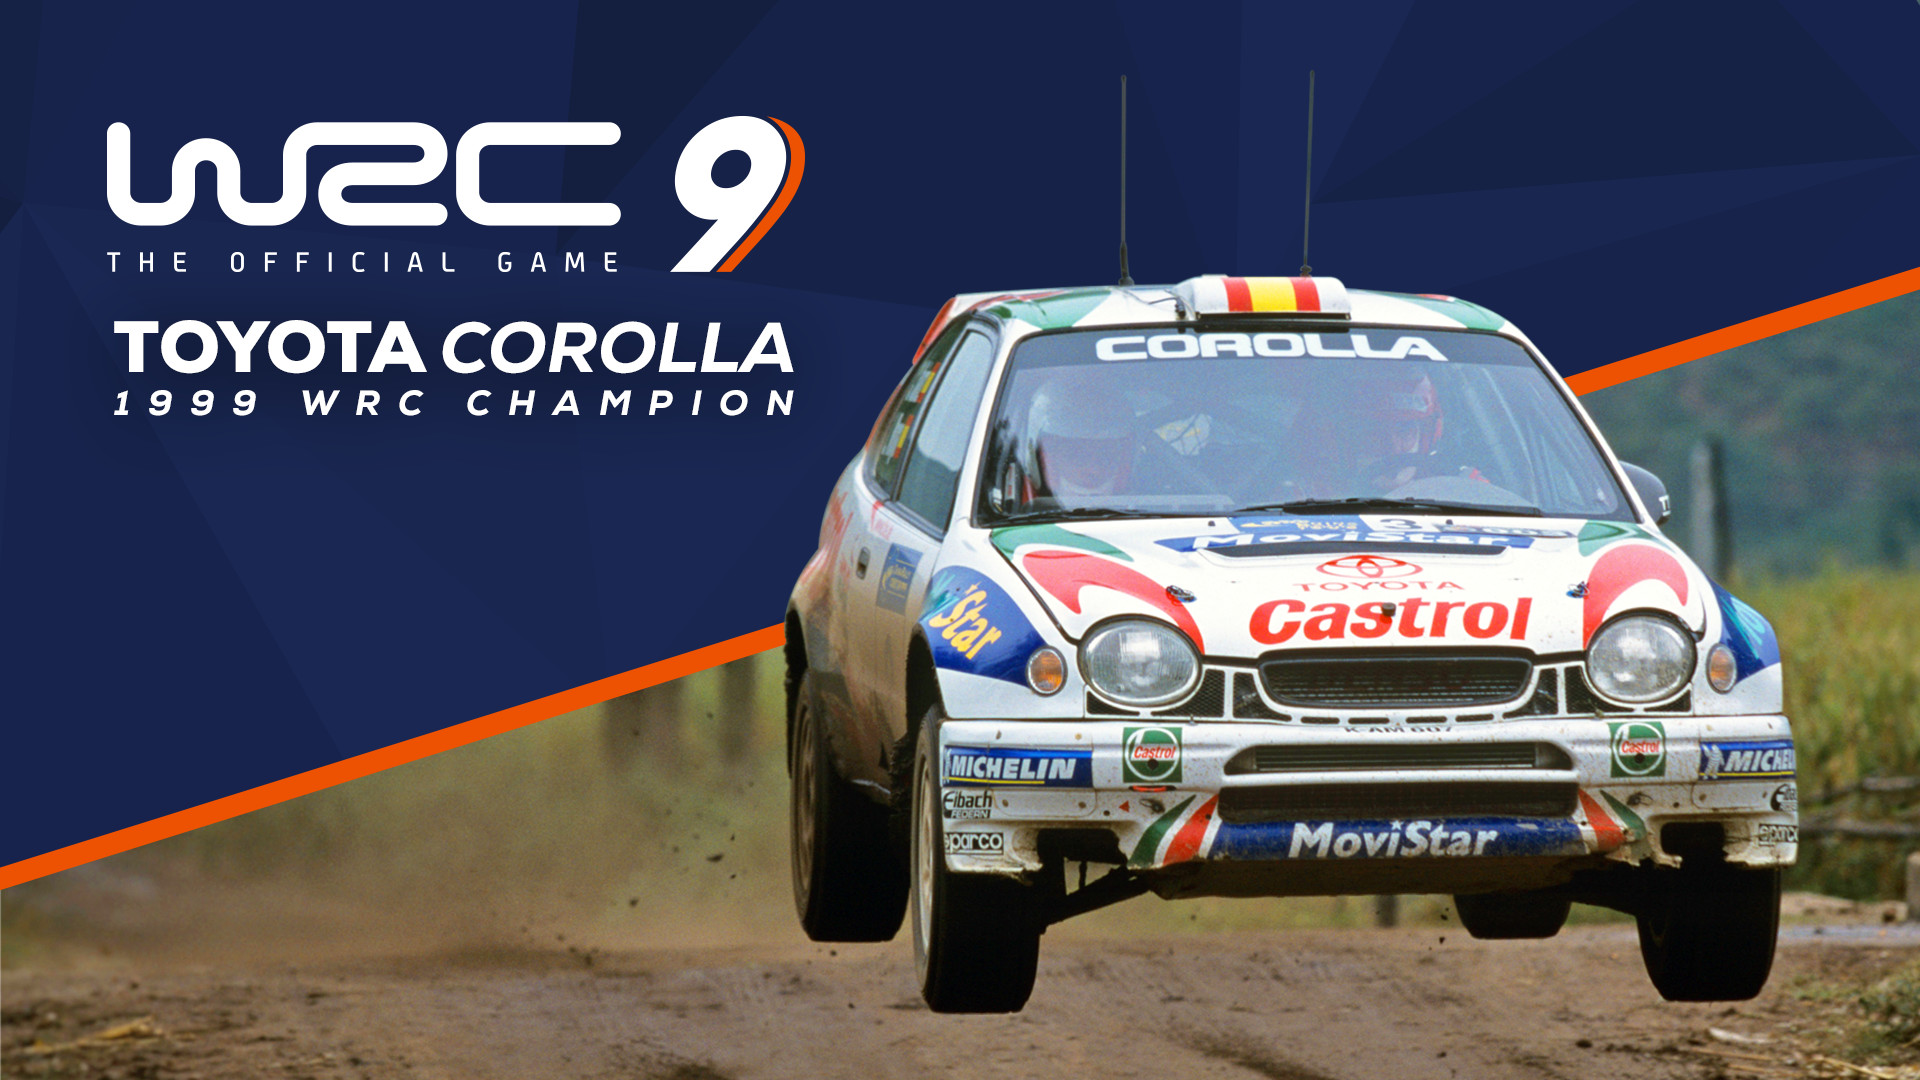 WRC 9 - Toyota Corolla 1999 DLC Steam CD Key 1.94 USD